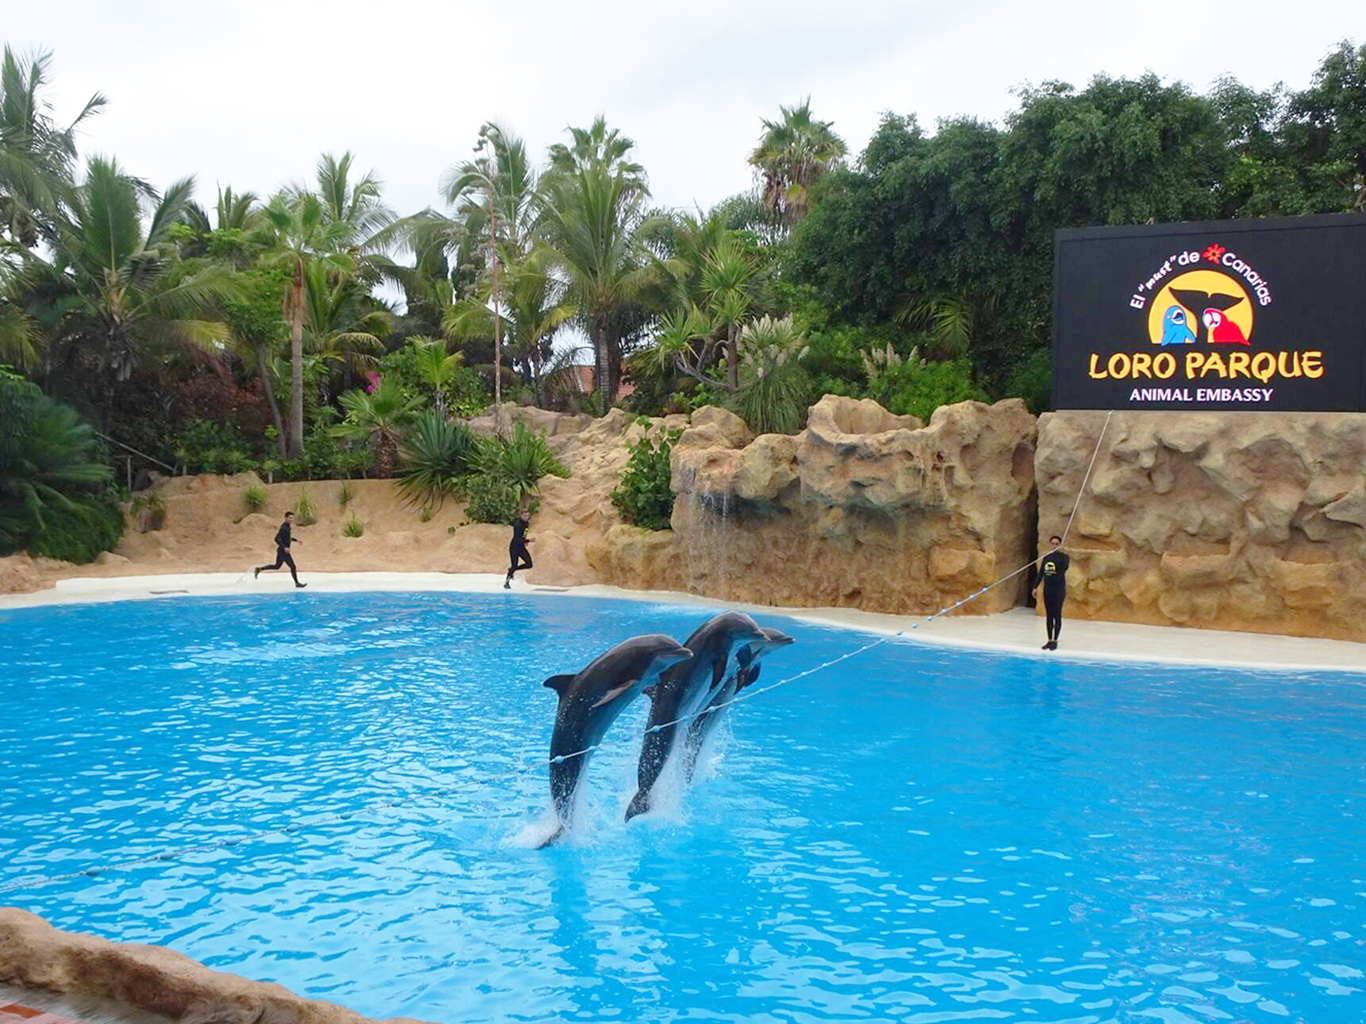 V zoologicko-botanickém parku Loro Parque můžete vidět např. delfíní show